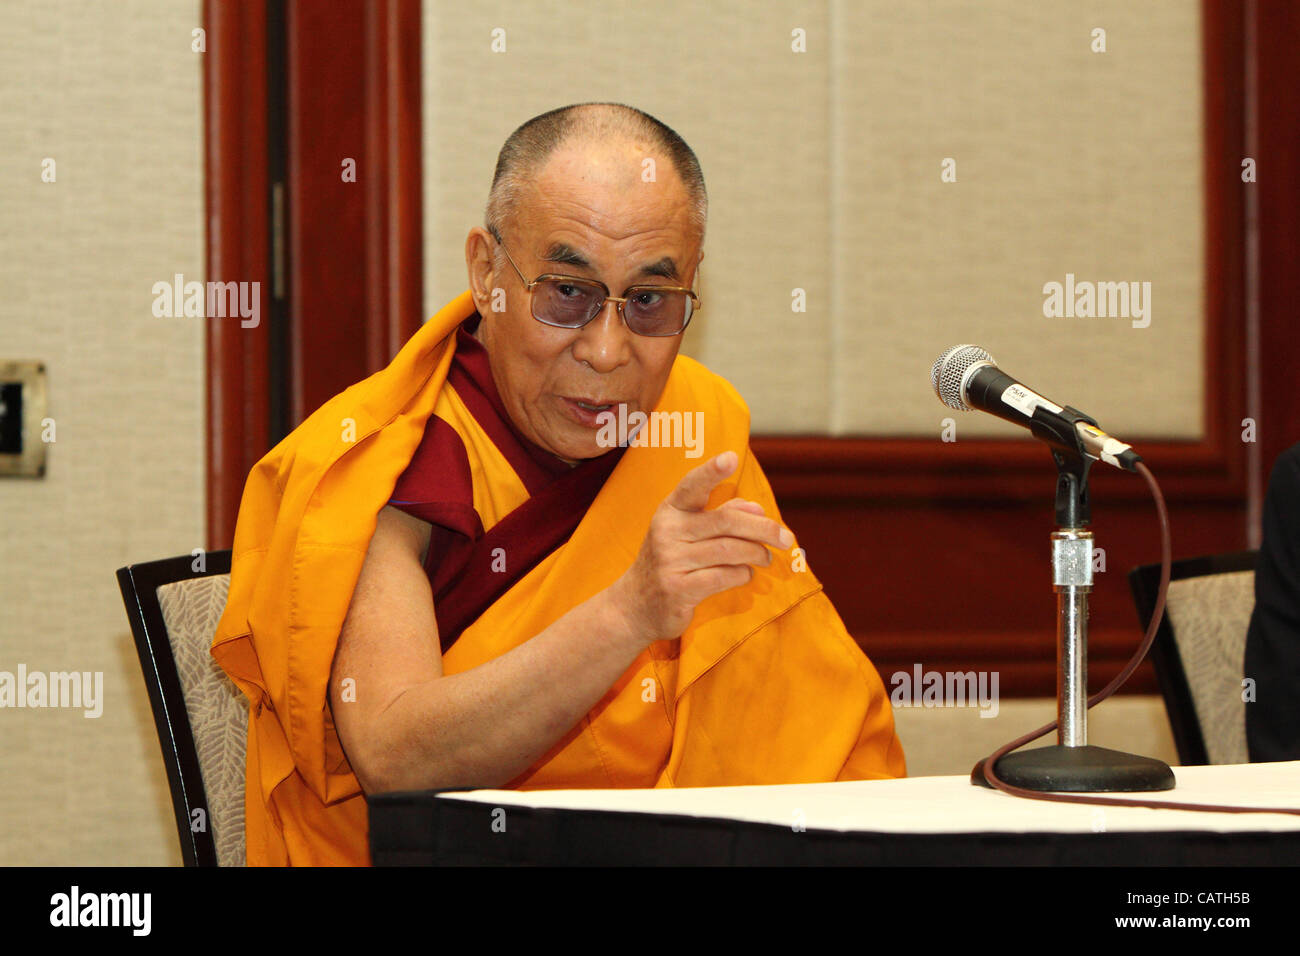 S.s. le dalaï-lama a donné une conférence de presse à l'Hôtel Westin, à Long Beach, CA, le vendredi 20 avril 2012. Le dalaï-lama parle de son 'trois engagements' avant répond aux questions concernant son abandon comme leader politique du gouvernement tibétain en exil, et l'auto-immolation récente Banque D'Images